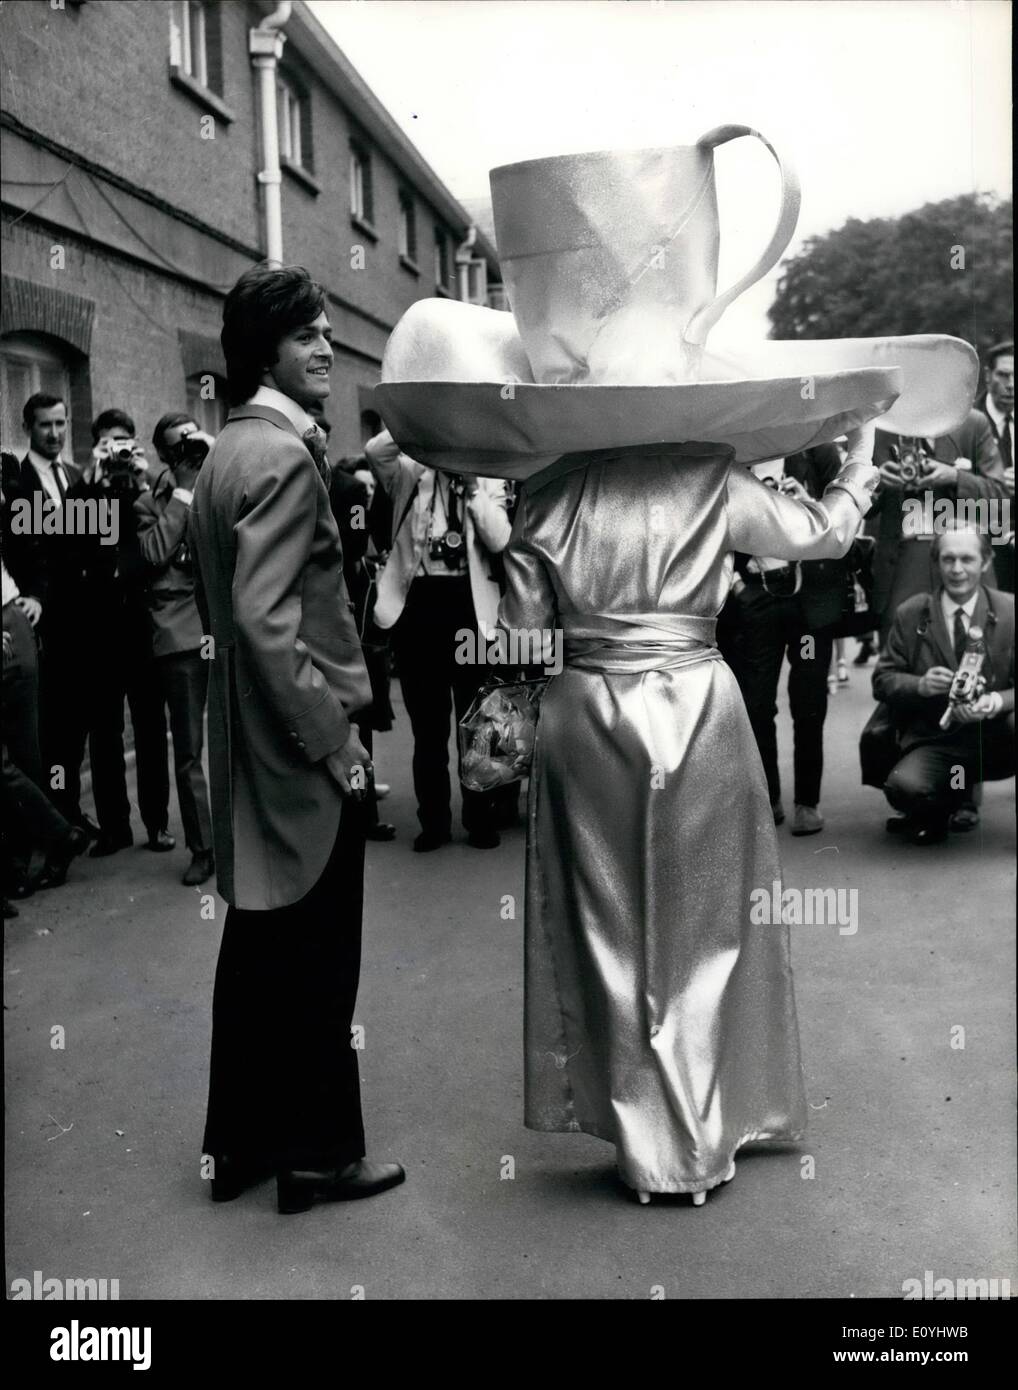 Juin 06, 1970 - La première journée de la réunion Royal Ascot Fashions du cours. Photo montre : Mme Gertrude Shilling qui est bien connu tous les ans pour porter des chapeaux, sensationnel aujourd'hui arrivé à Ascot le port de cette tasse et soucoupe et cuillère création, dans l'or boiteux. C'est ce qu'il ressemblait à de l'arrière. Banque D'Images